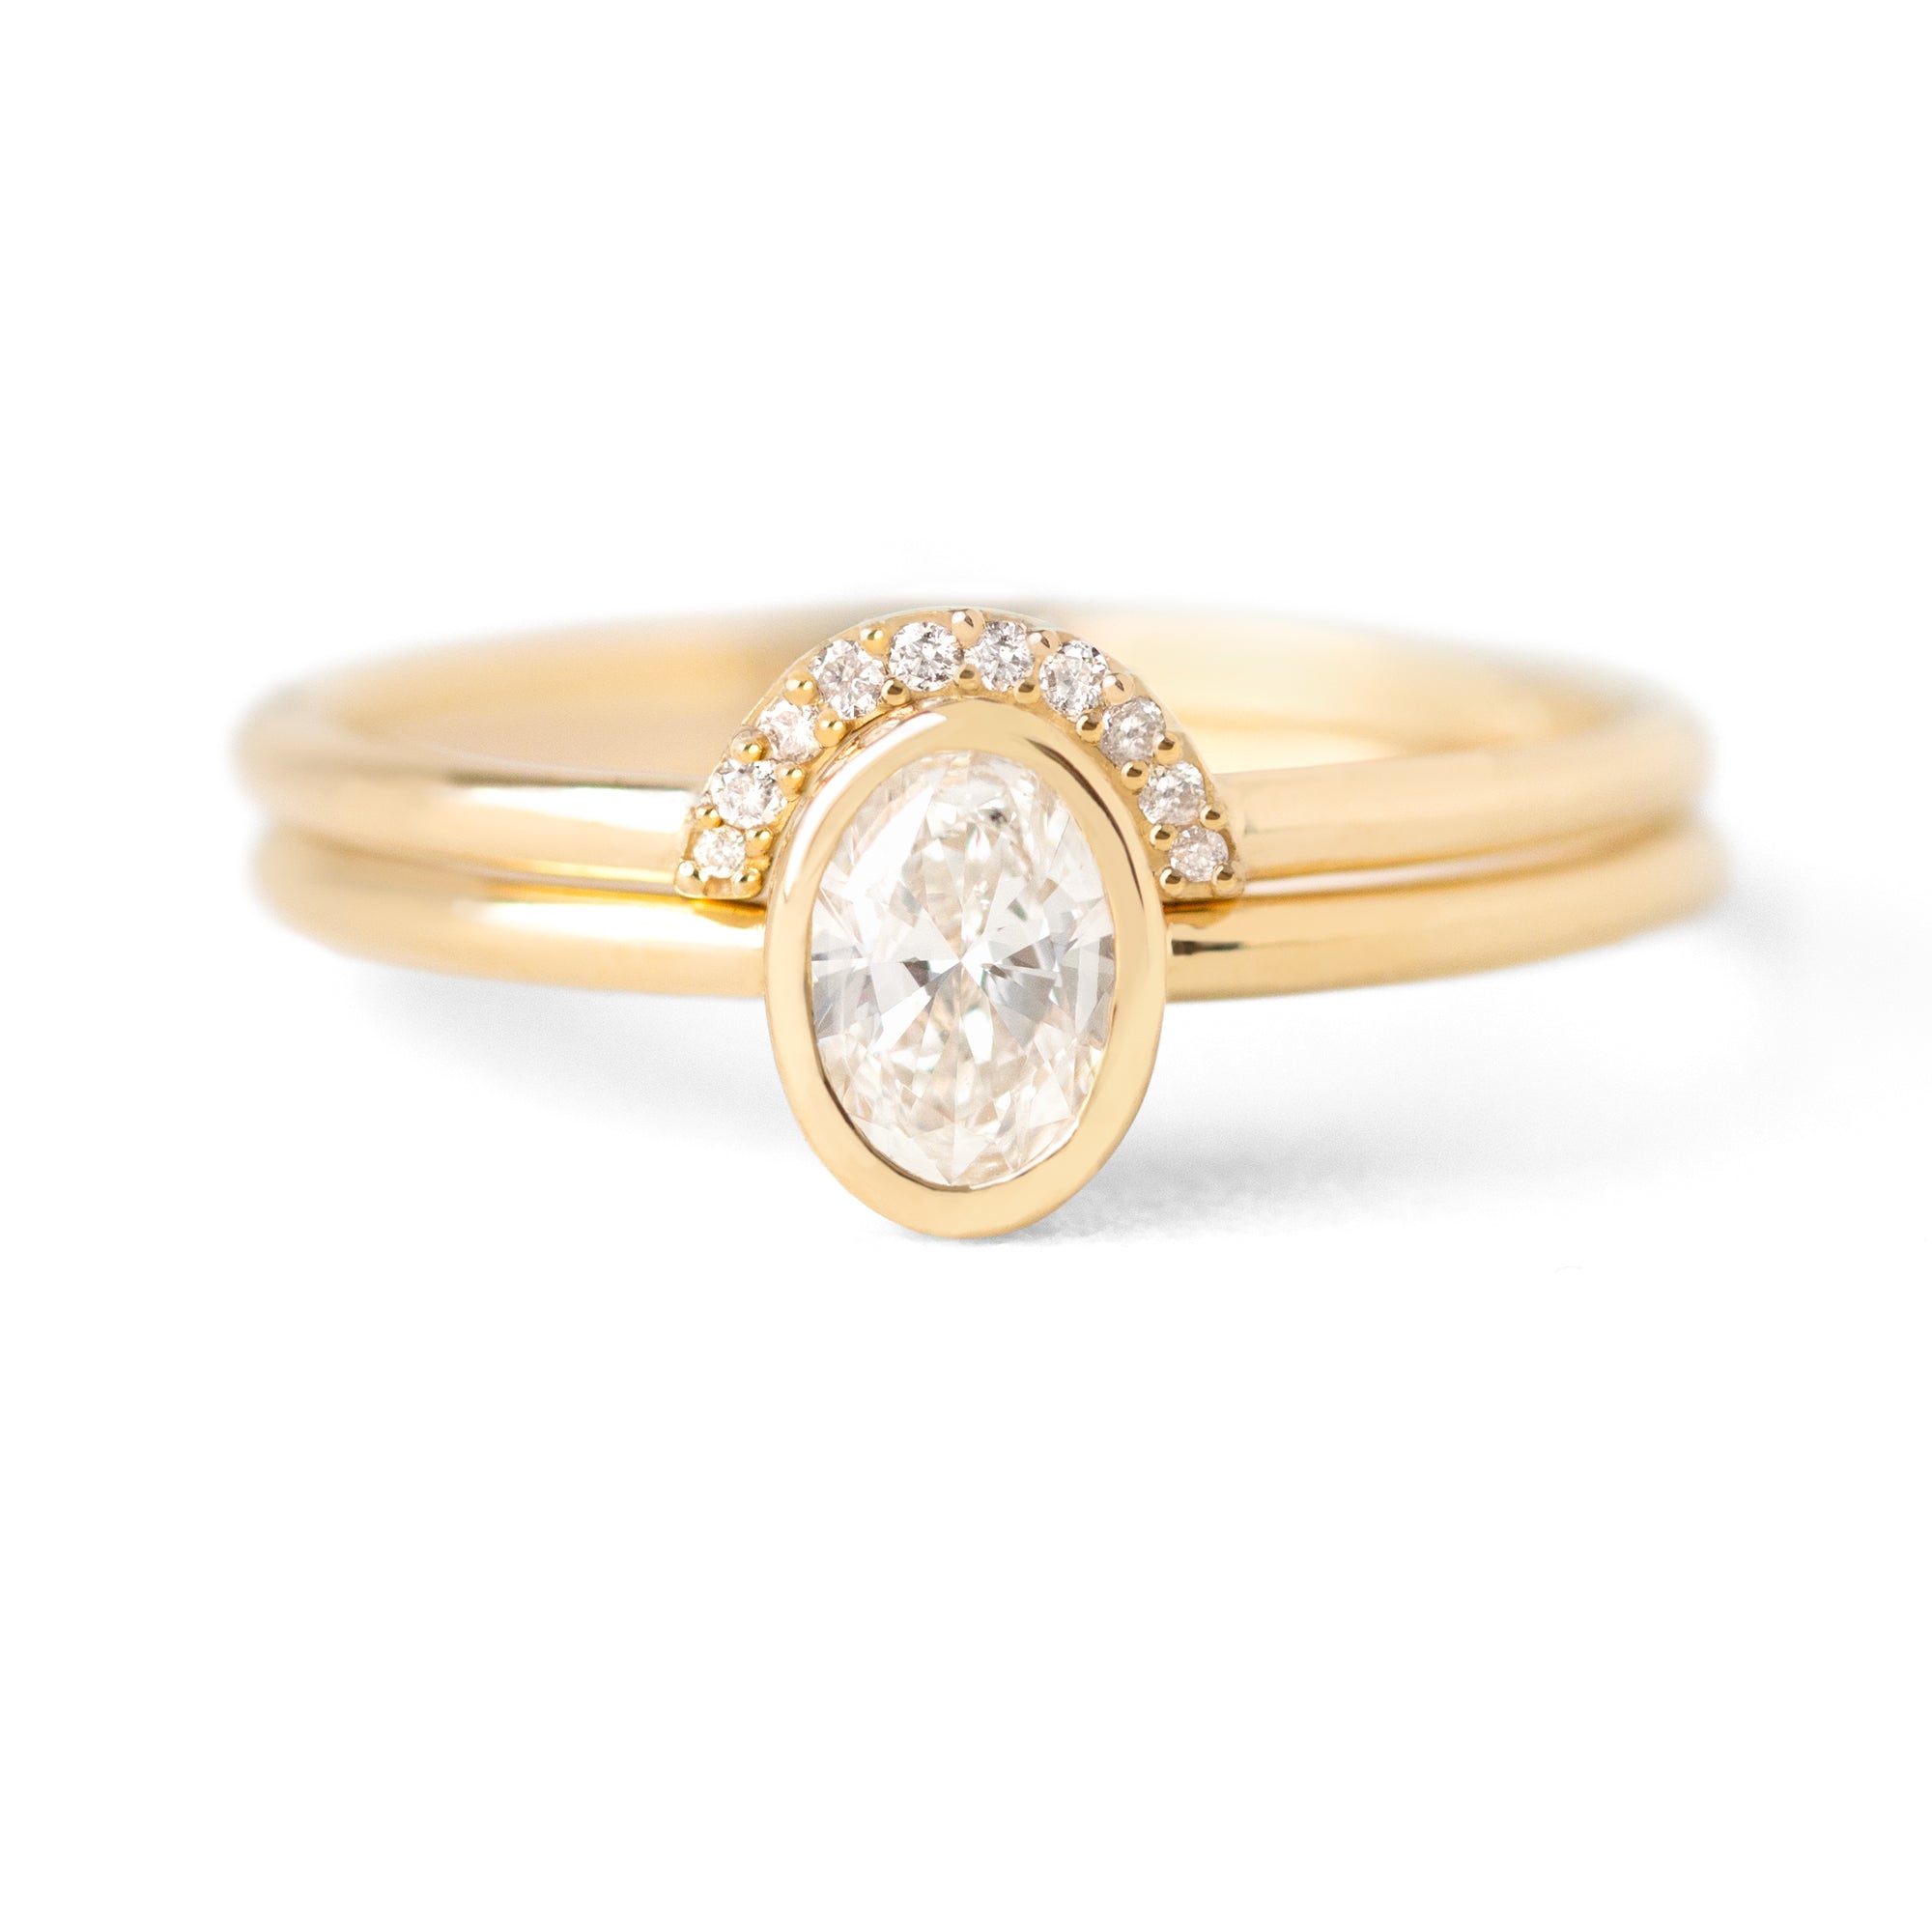 Jamie Park Jewelry - 0.45 tcw. Oval Diamond Bezel Ring Set